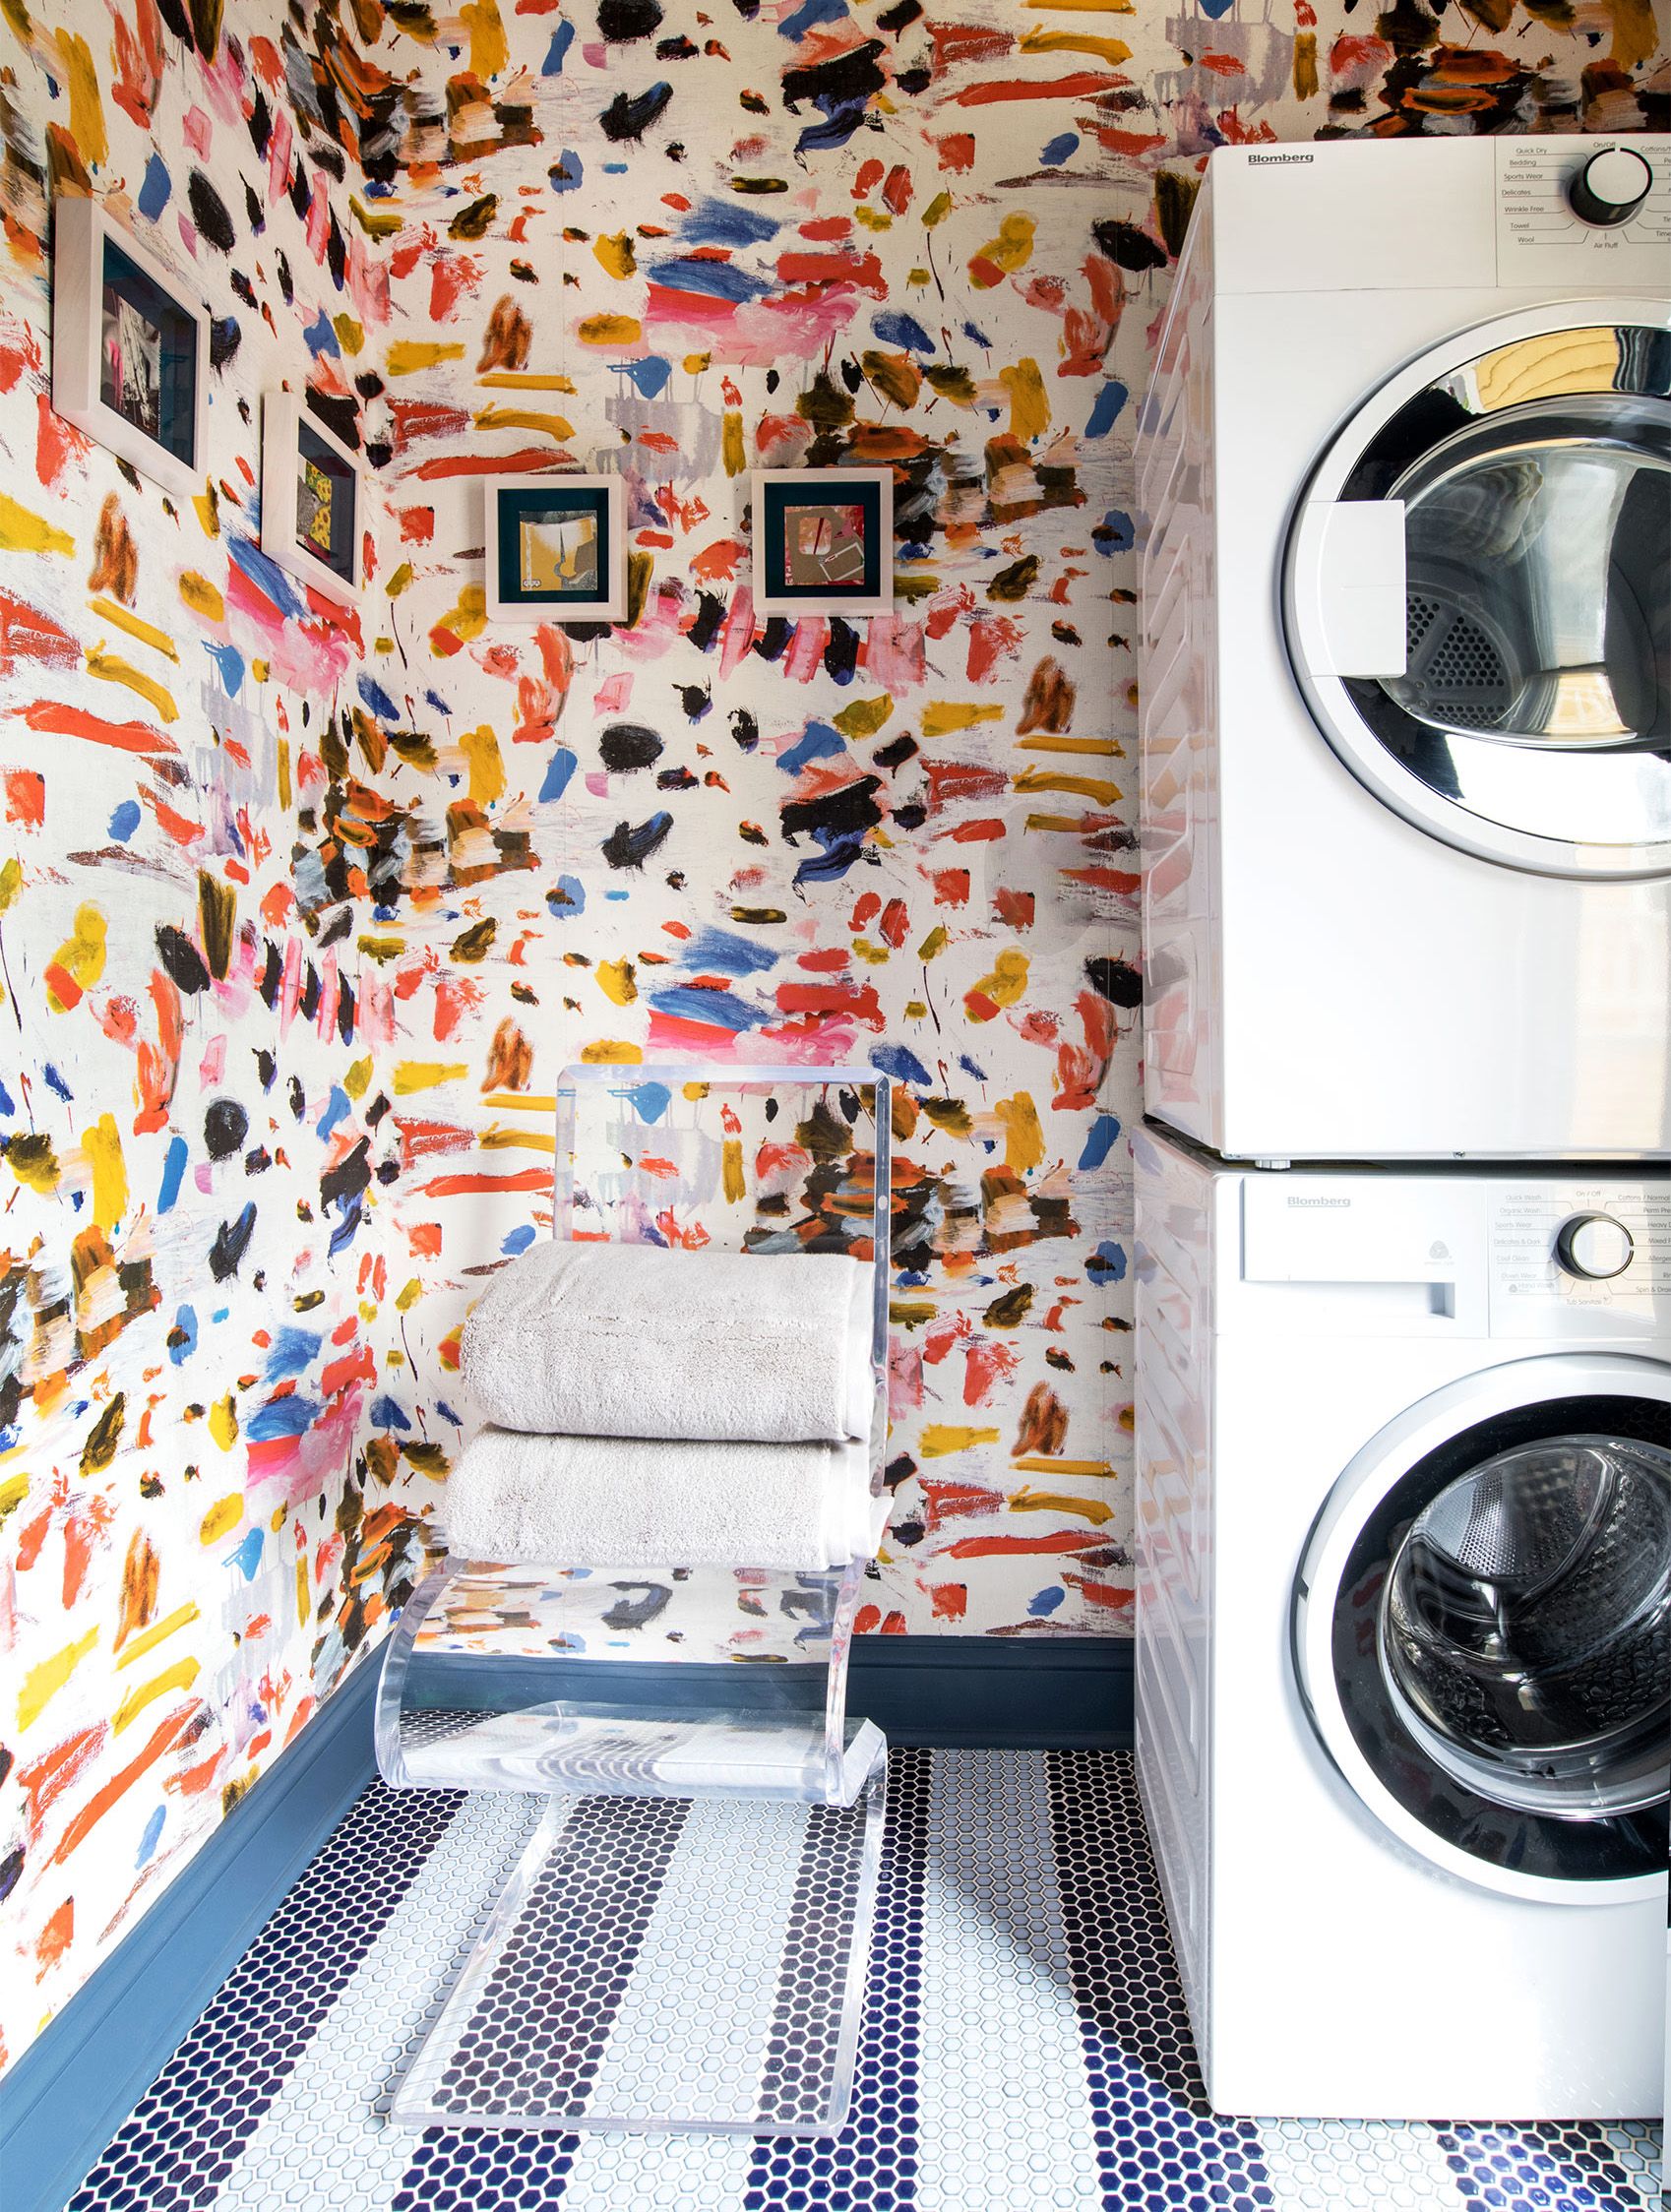 Louis Vuitton stencil laundry room